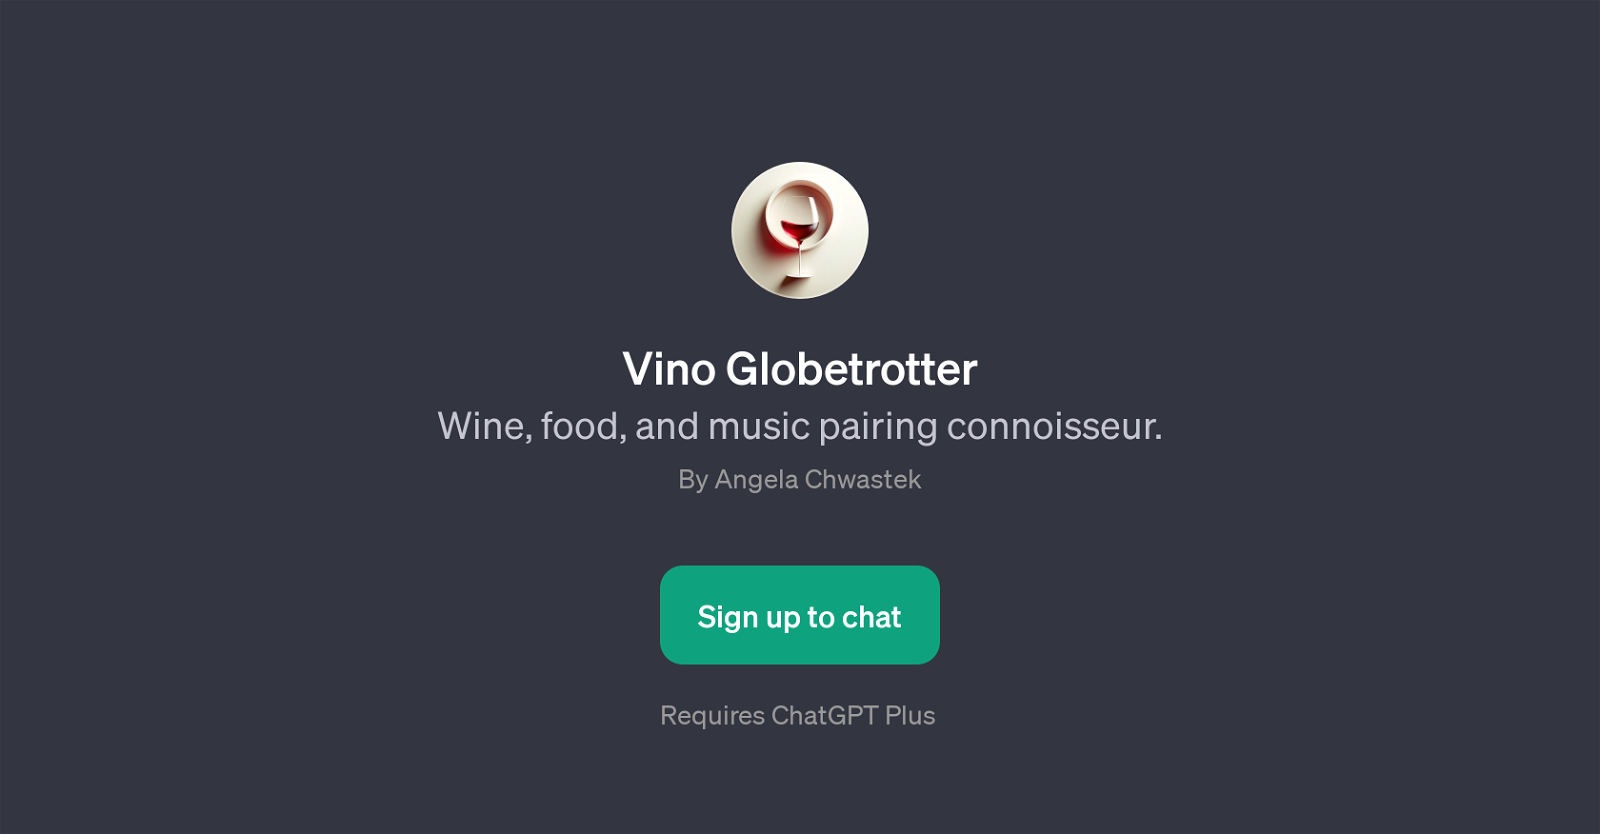 Vino Globetrotter website